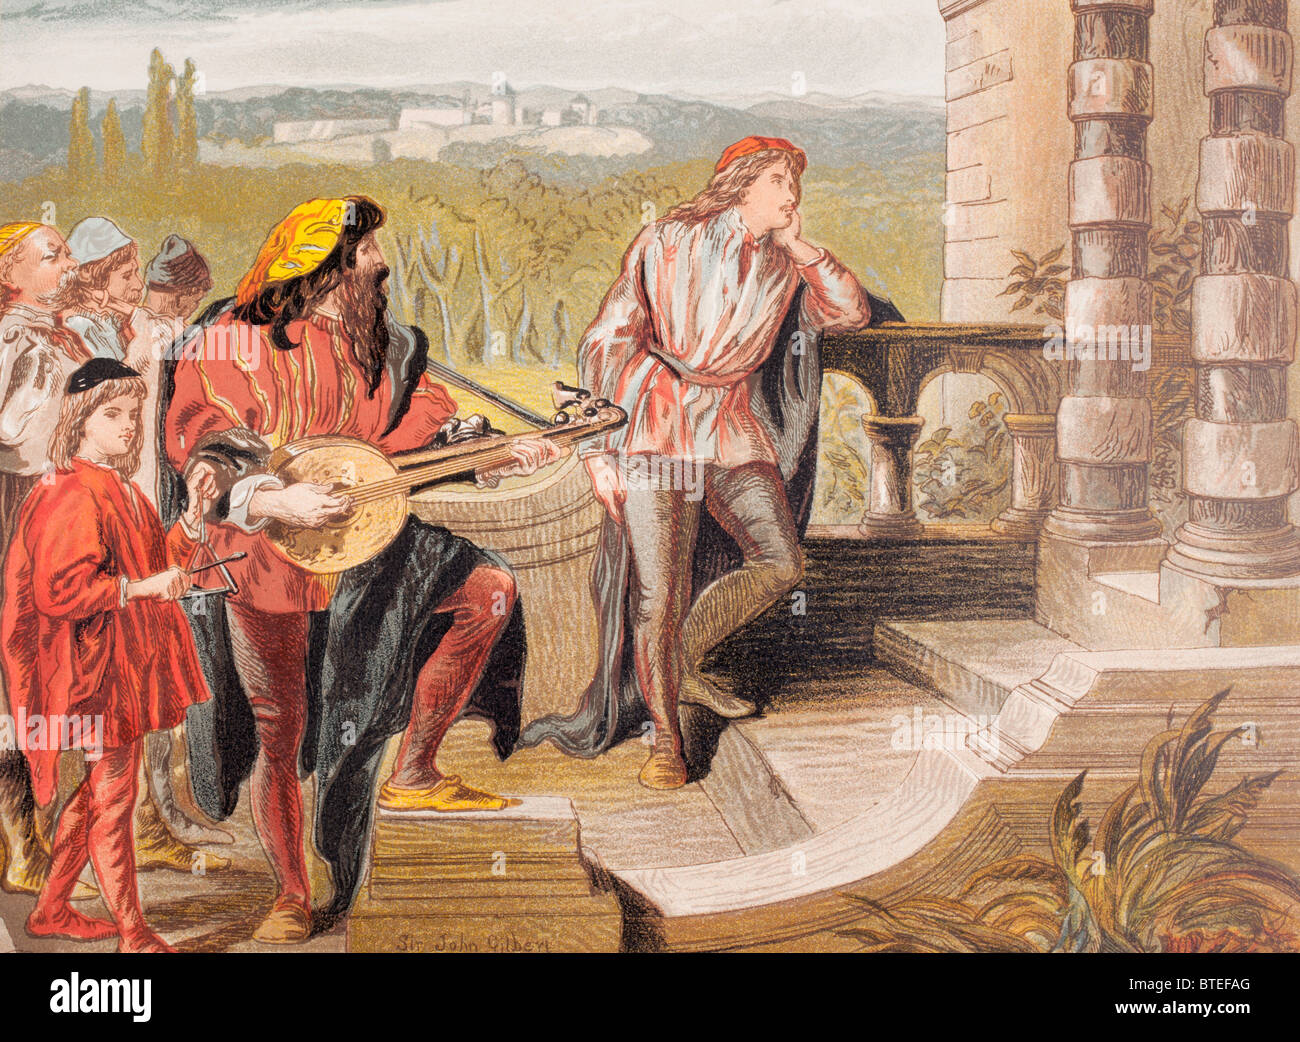 Der Musiker singt in The Two Gentlemen of Verona, Akt IV, Szene II, von William Shakespeare. "Wer ist Sylvia?" Stockfoto